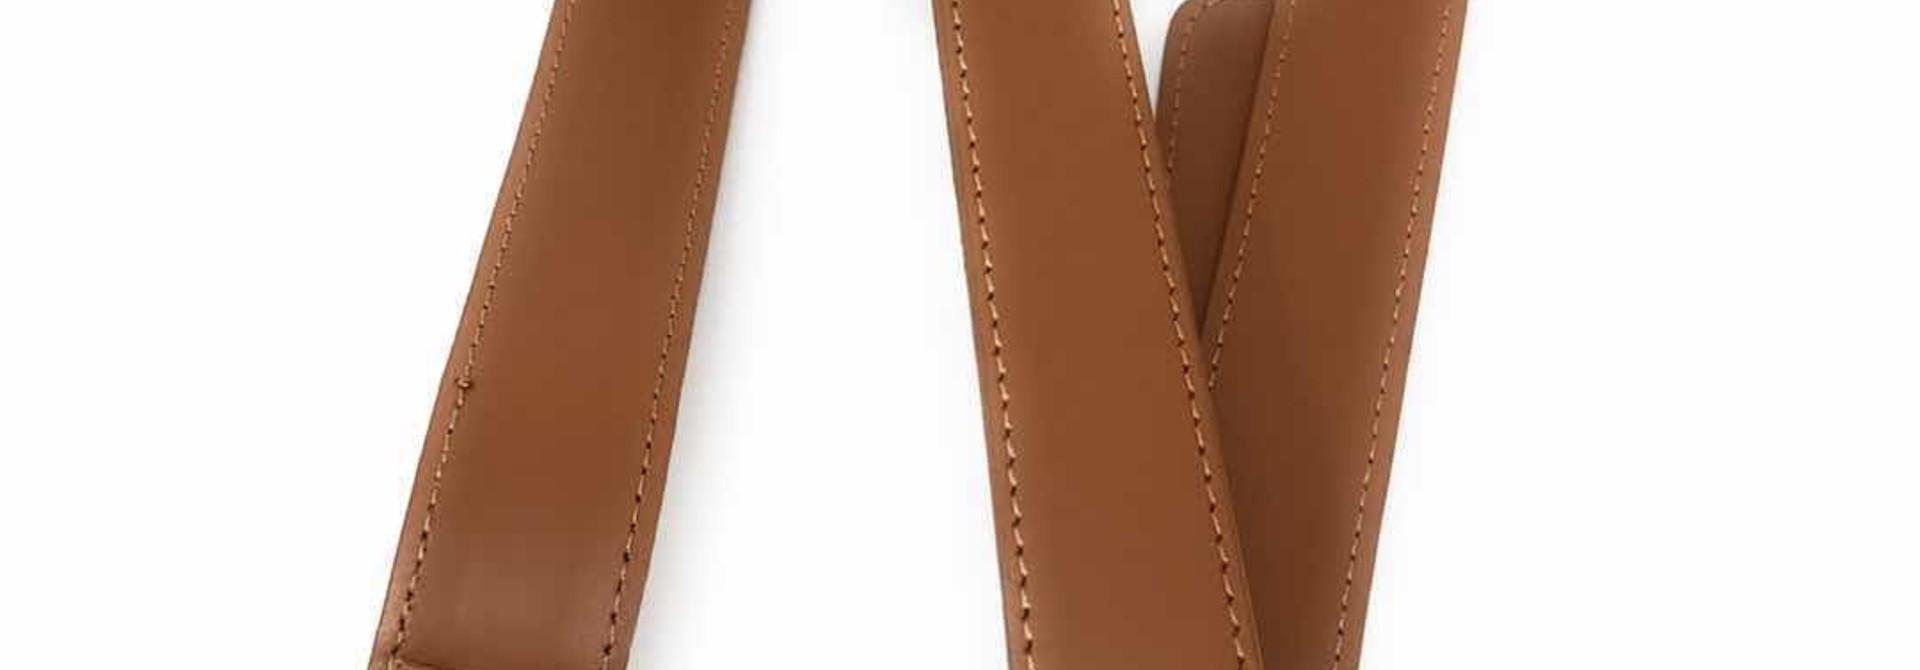 Shoulder Strap for Women 13.3 and 15.6 inch Laptop Bag - Messenger Bag - Split Leather - Brown